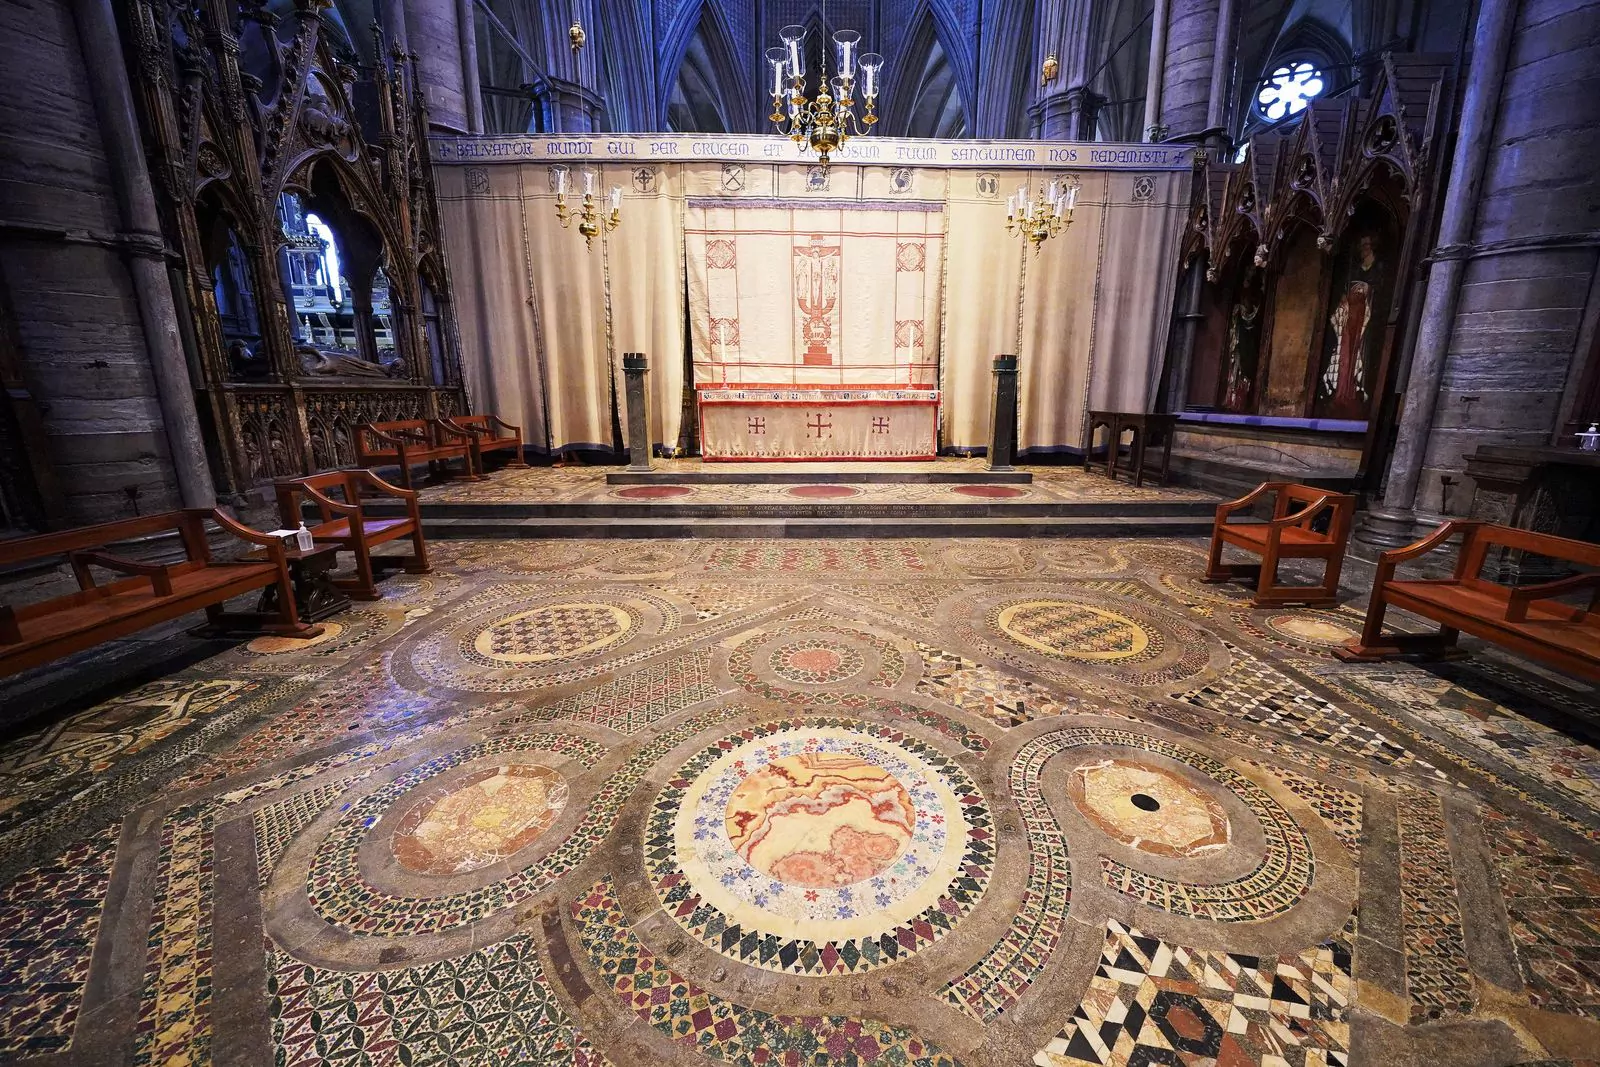 Впервые в истории Вестминстерского аббатства посетители смогут пройтись по мозаичному полу Космати, фото 2